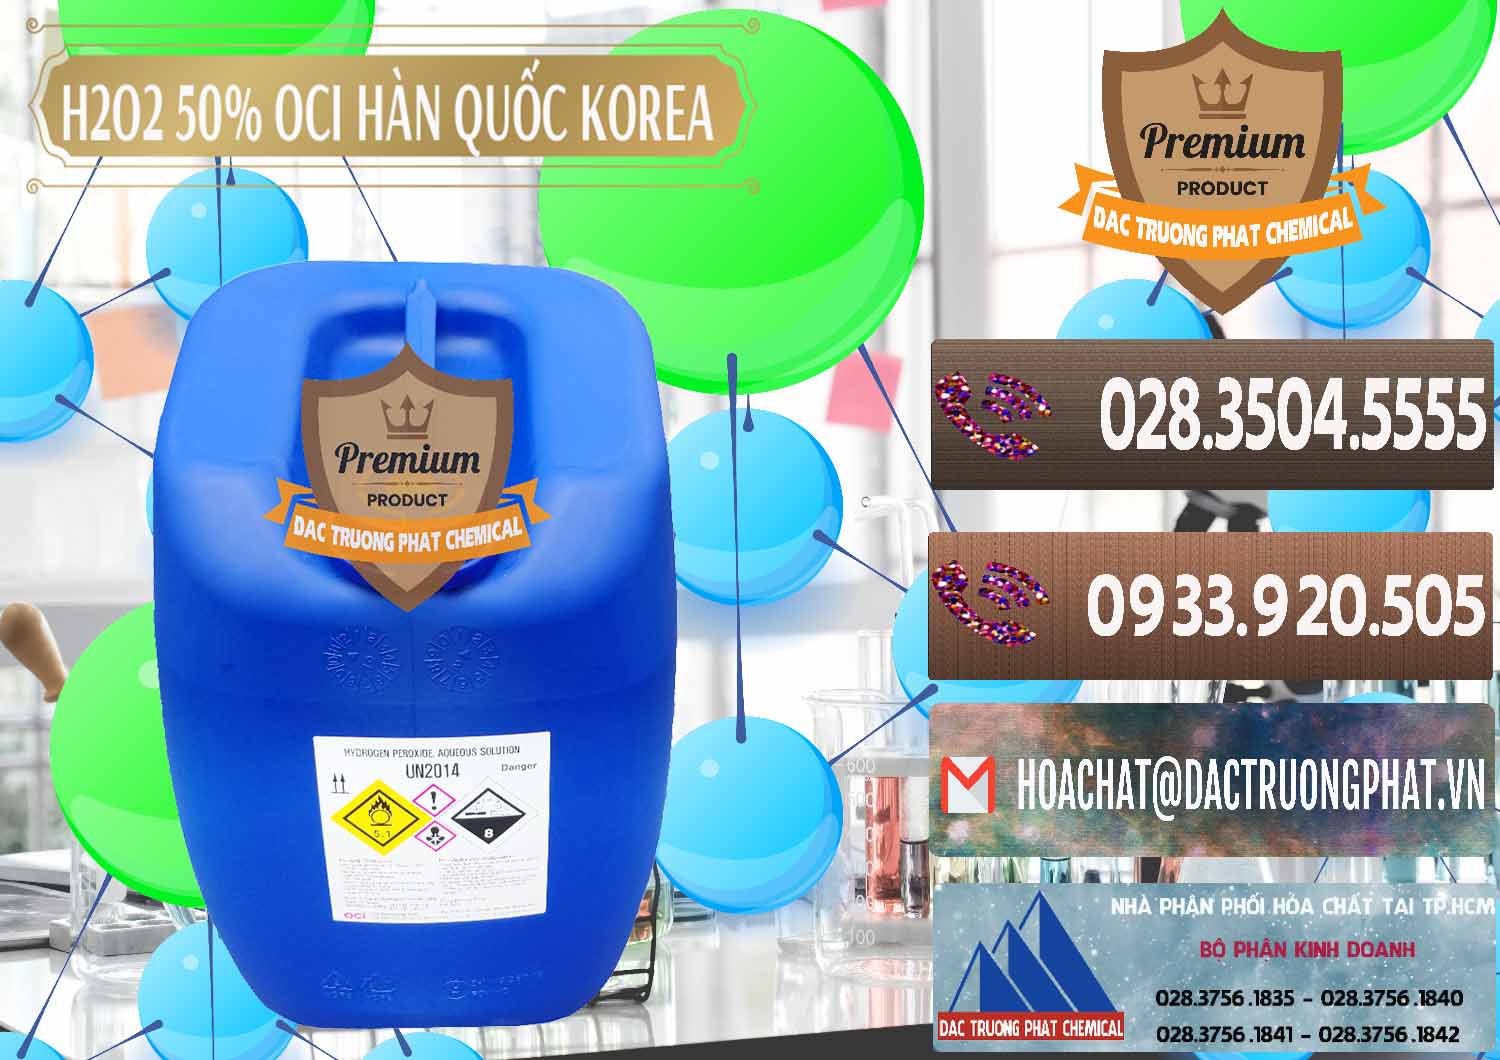 Công ty chuyên kinh doanh và bán H2O2 - Hydrogen Peroxide 50% OCI Hàn Quốc Korea - 0075 - Nơi chuyên phân phối _ bán hóa chất tại TP.HCM - hoachatviet.net